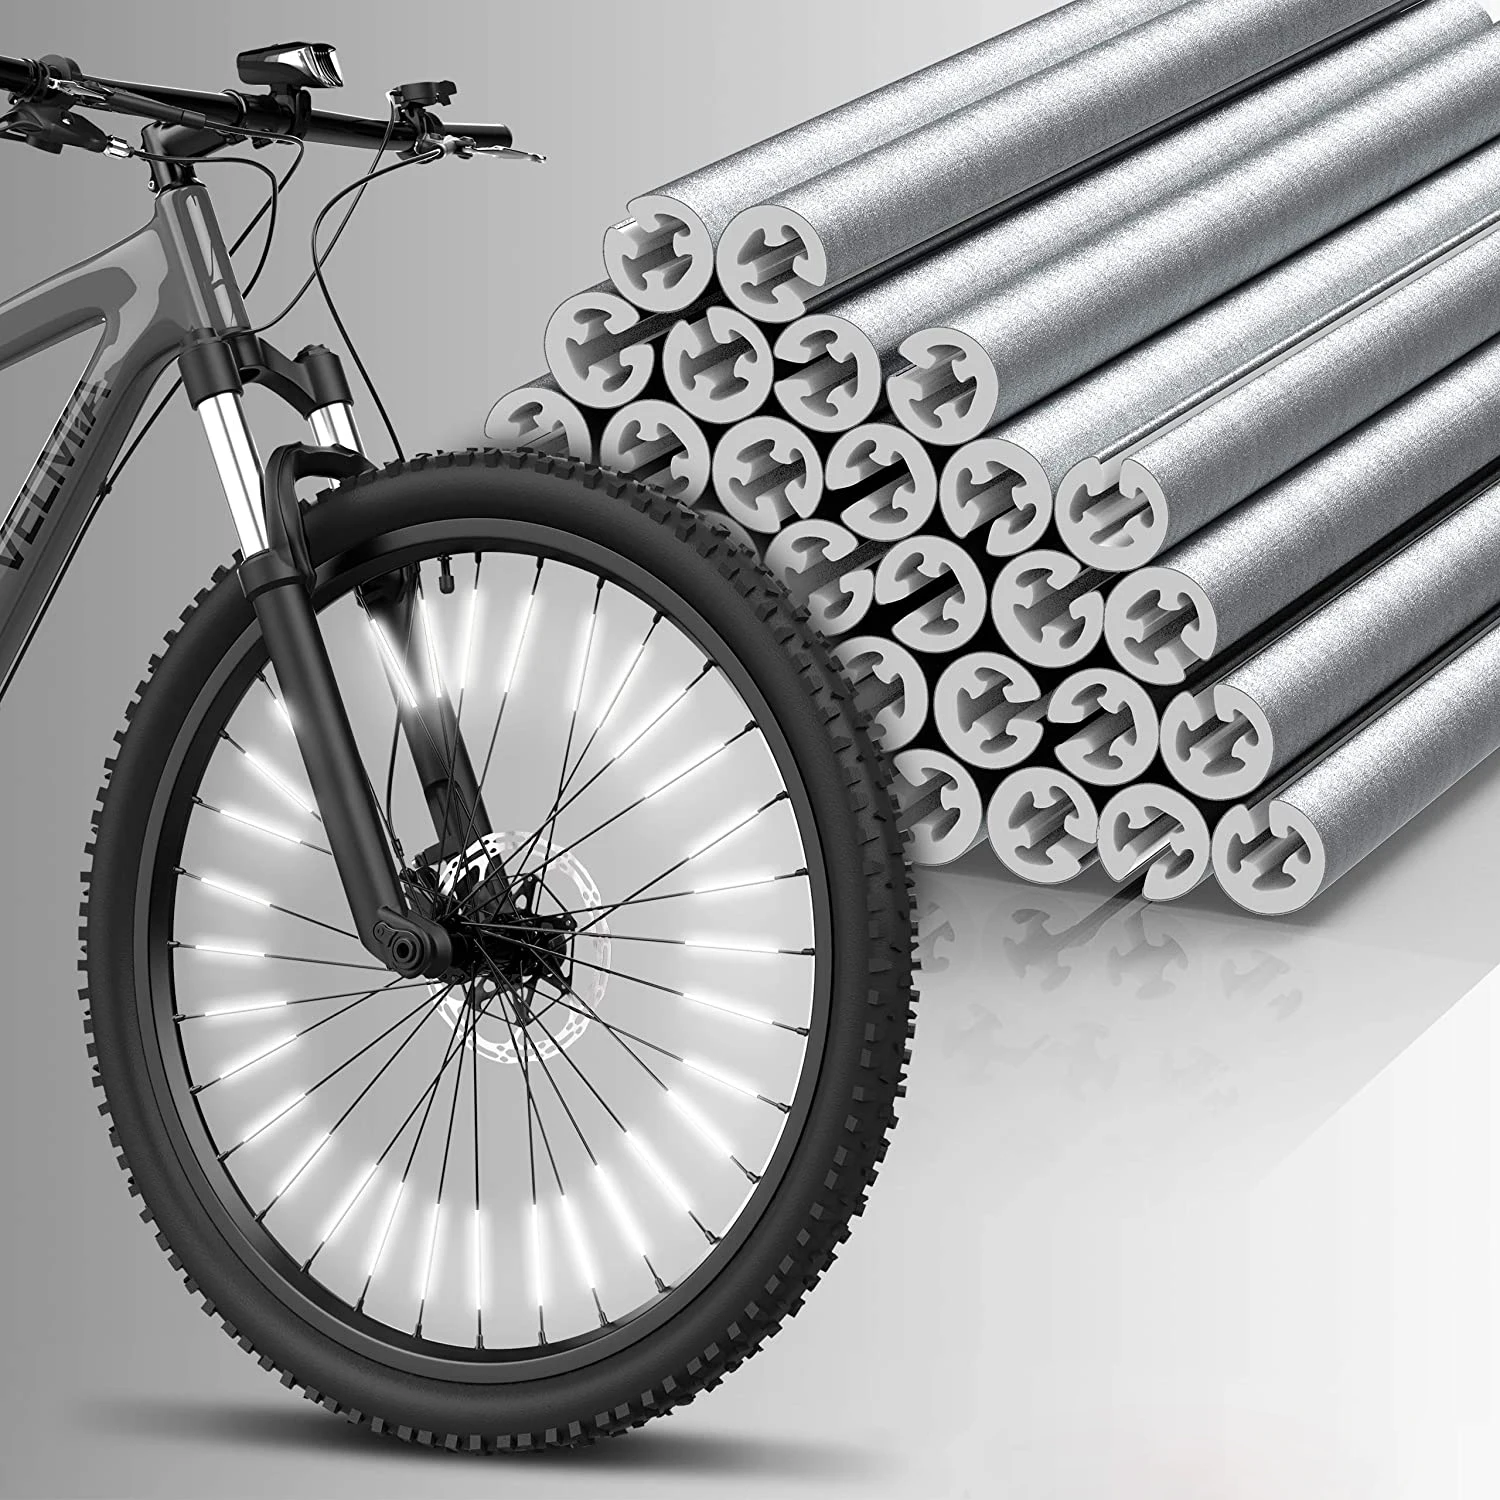 Jacekee Bandes réfléchissantes pour vélo | 36 Bandes d'avertissement pour  vélo | Fournitures vélo en matériau ABS Polyvalent pour VTT, vélos Route